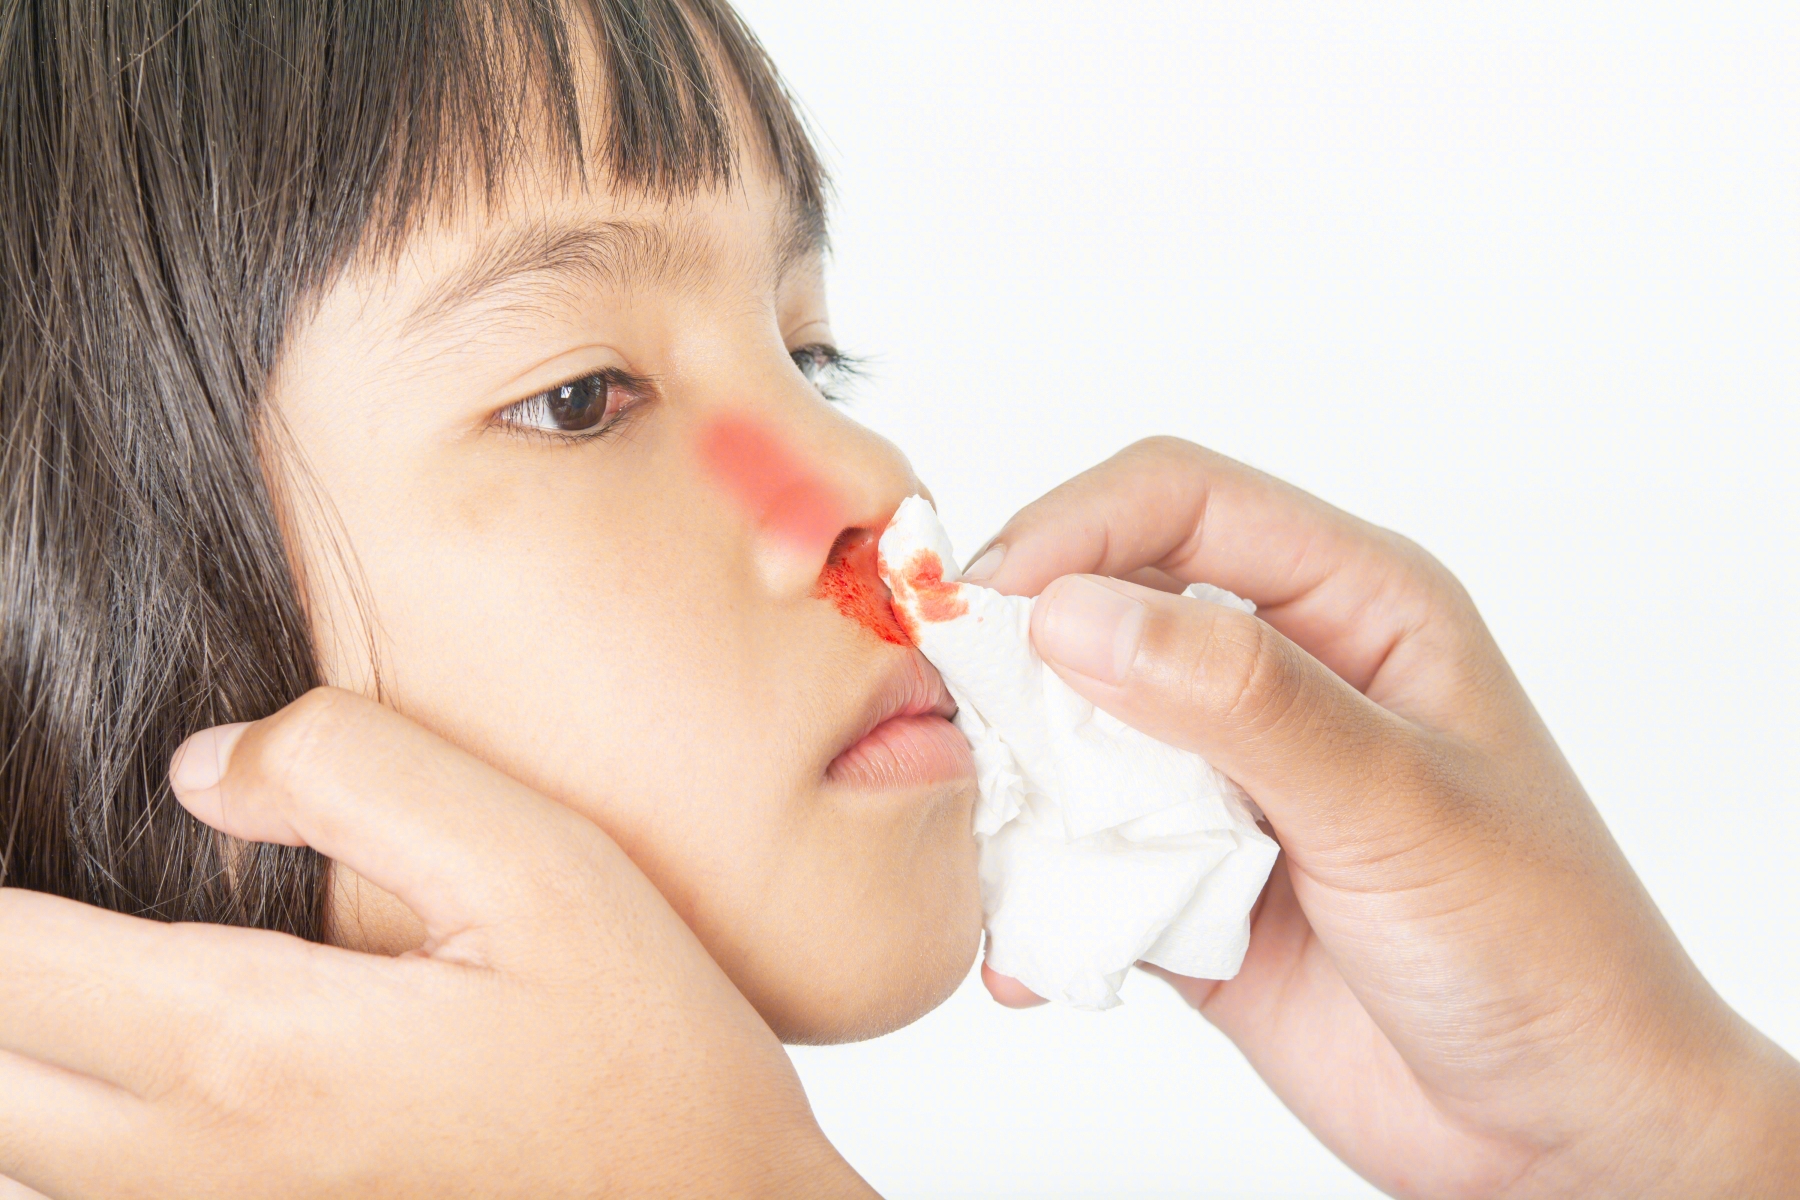 正确处理流鼻血的三步 - 资讯频道